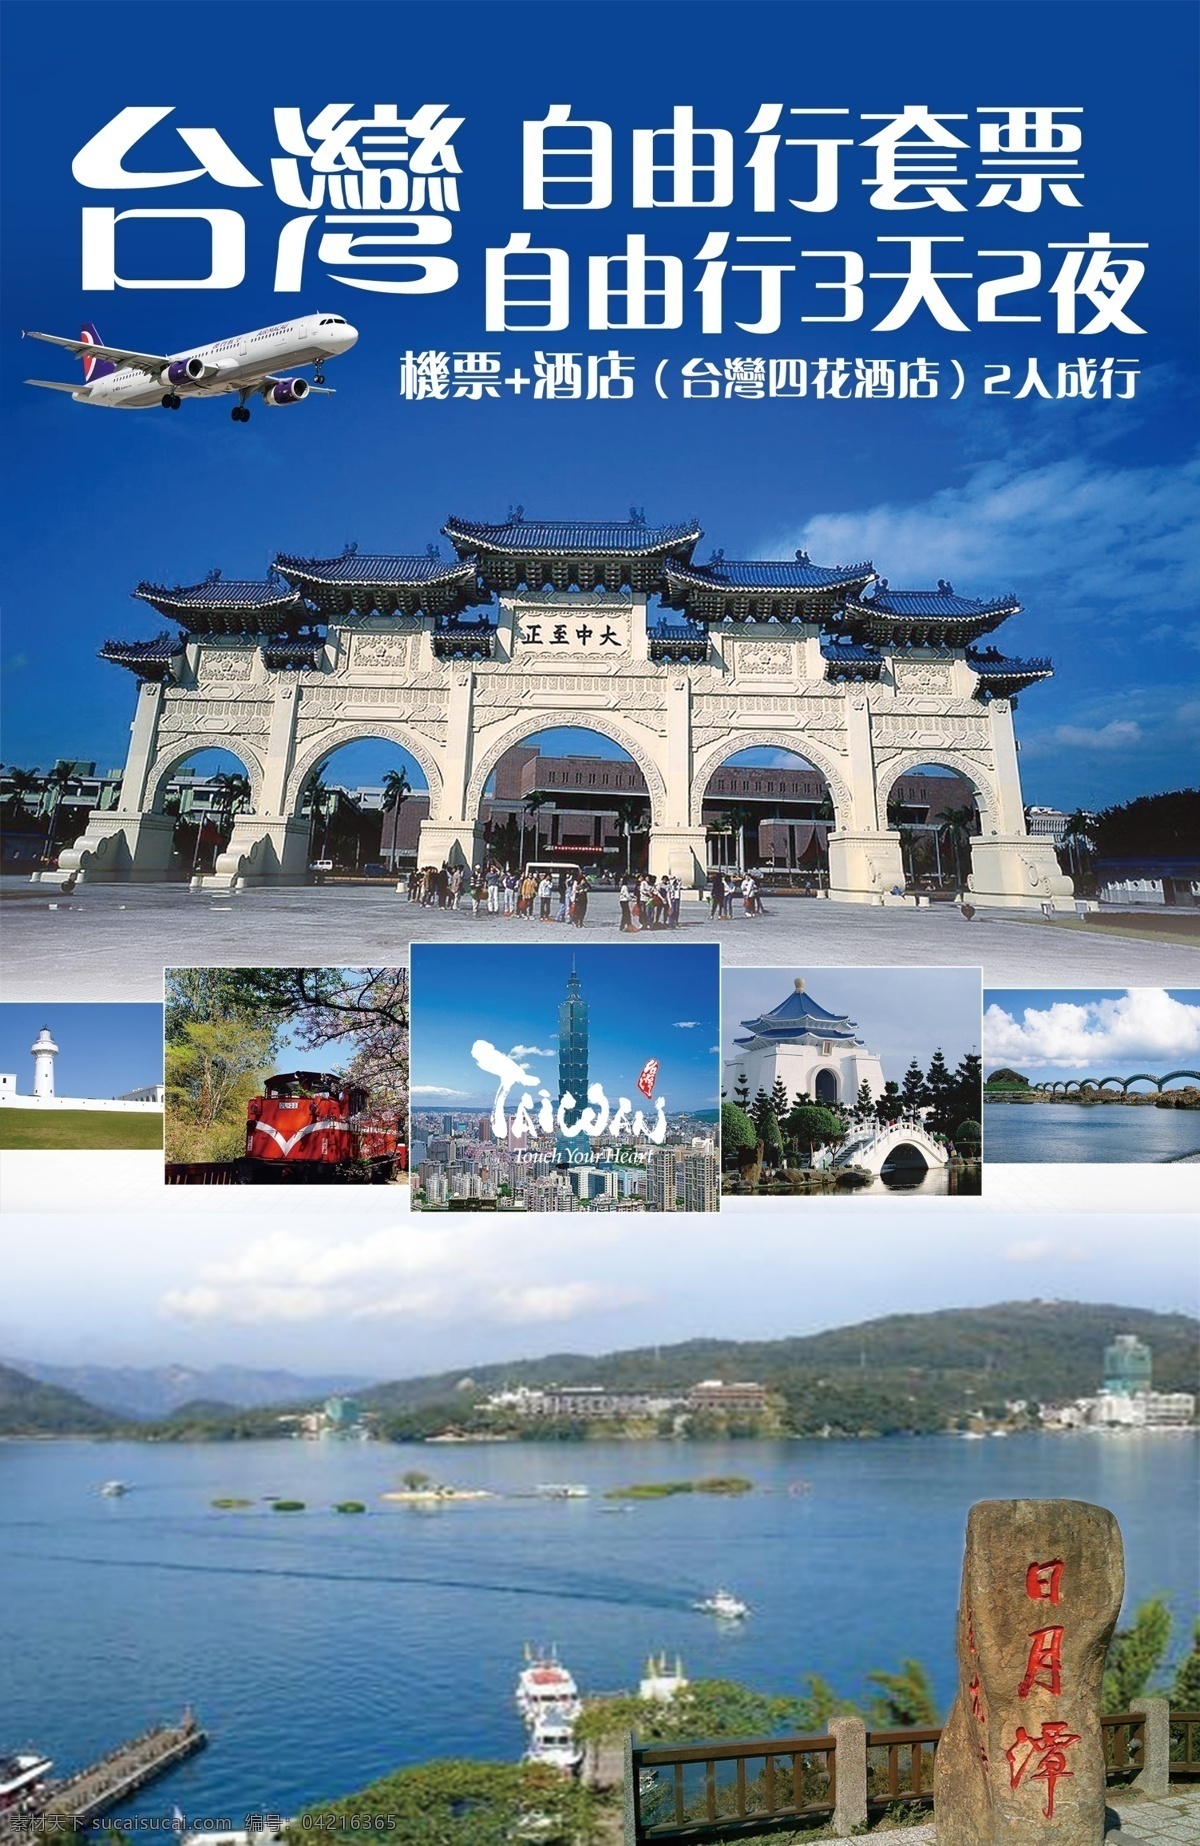 台 灣 自由行 套票 台灣旅遊 高清 模板 下 載 板式設計 蓝色